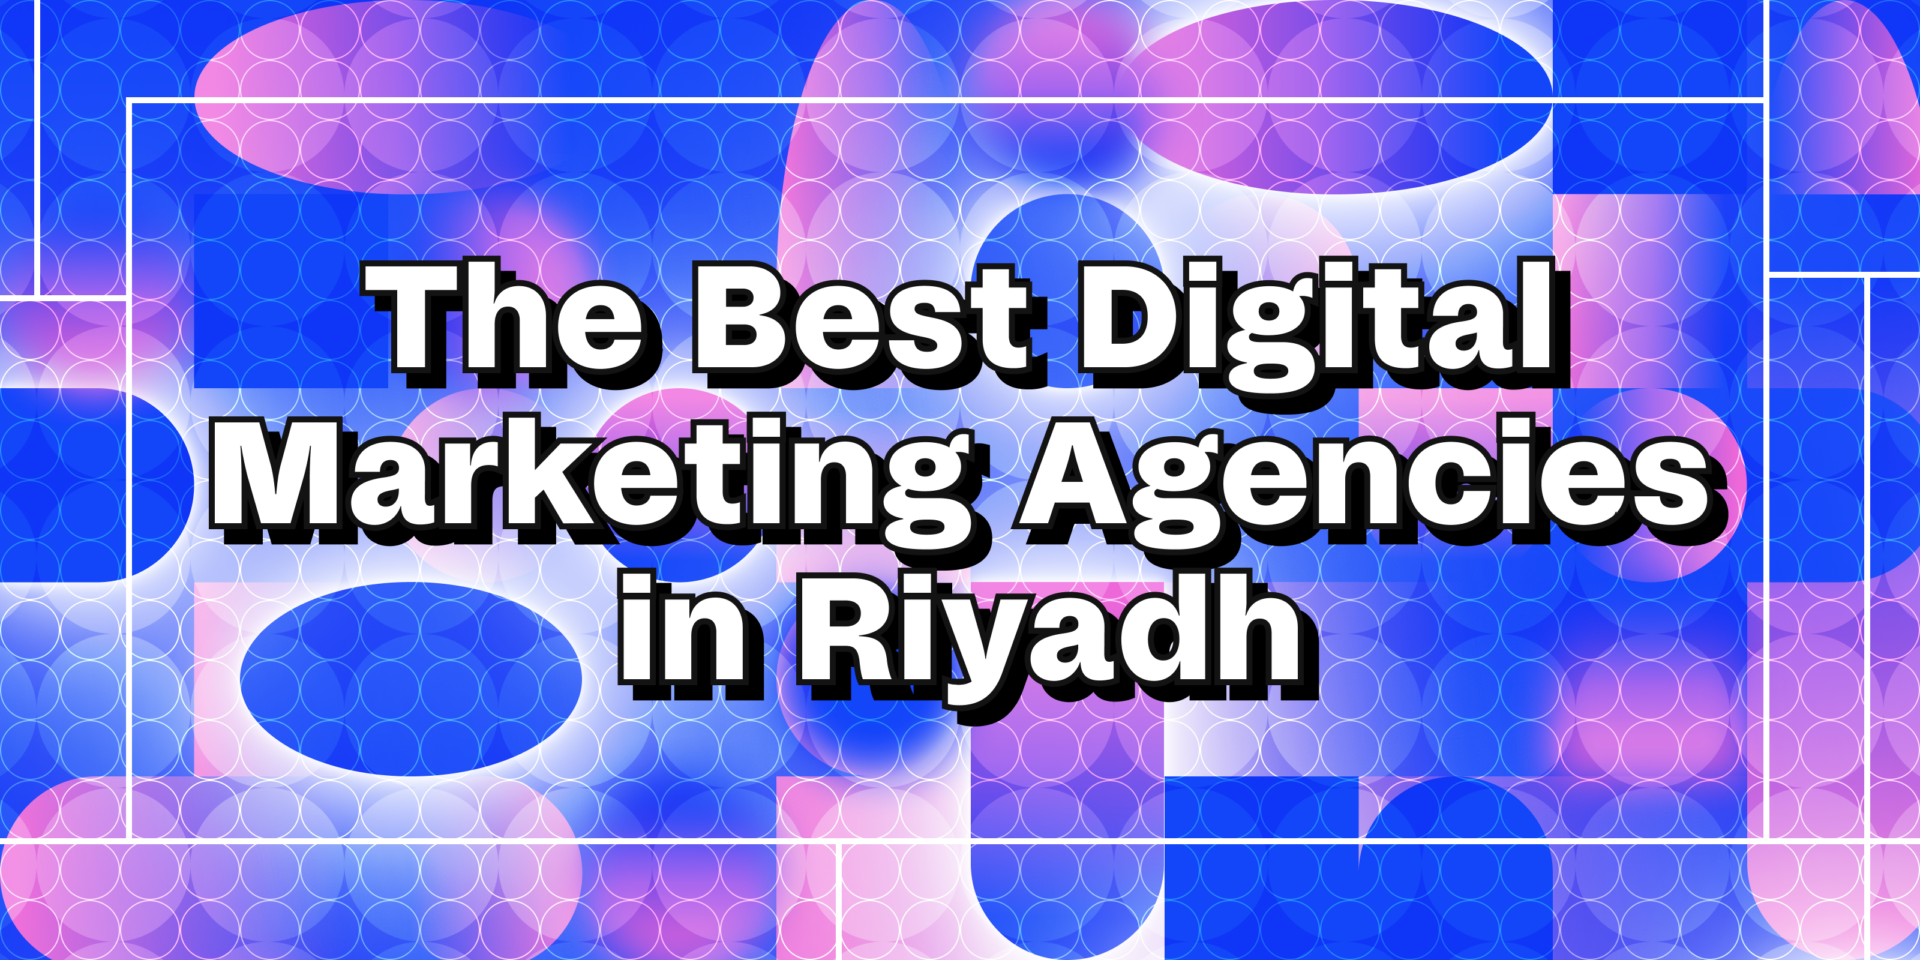 The best digital marketing agencies in Riyadh